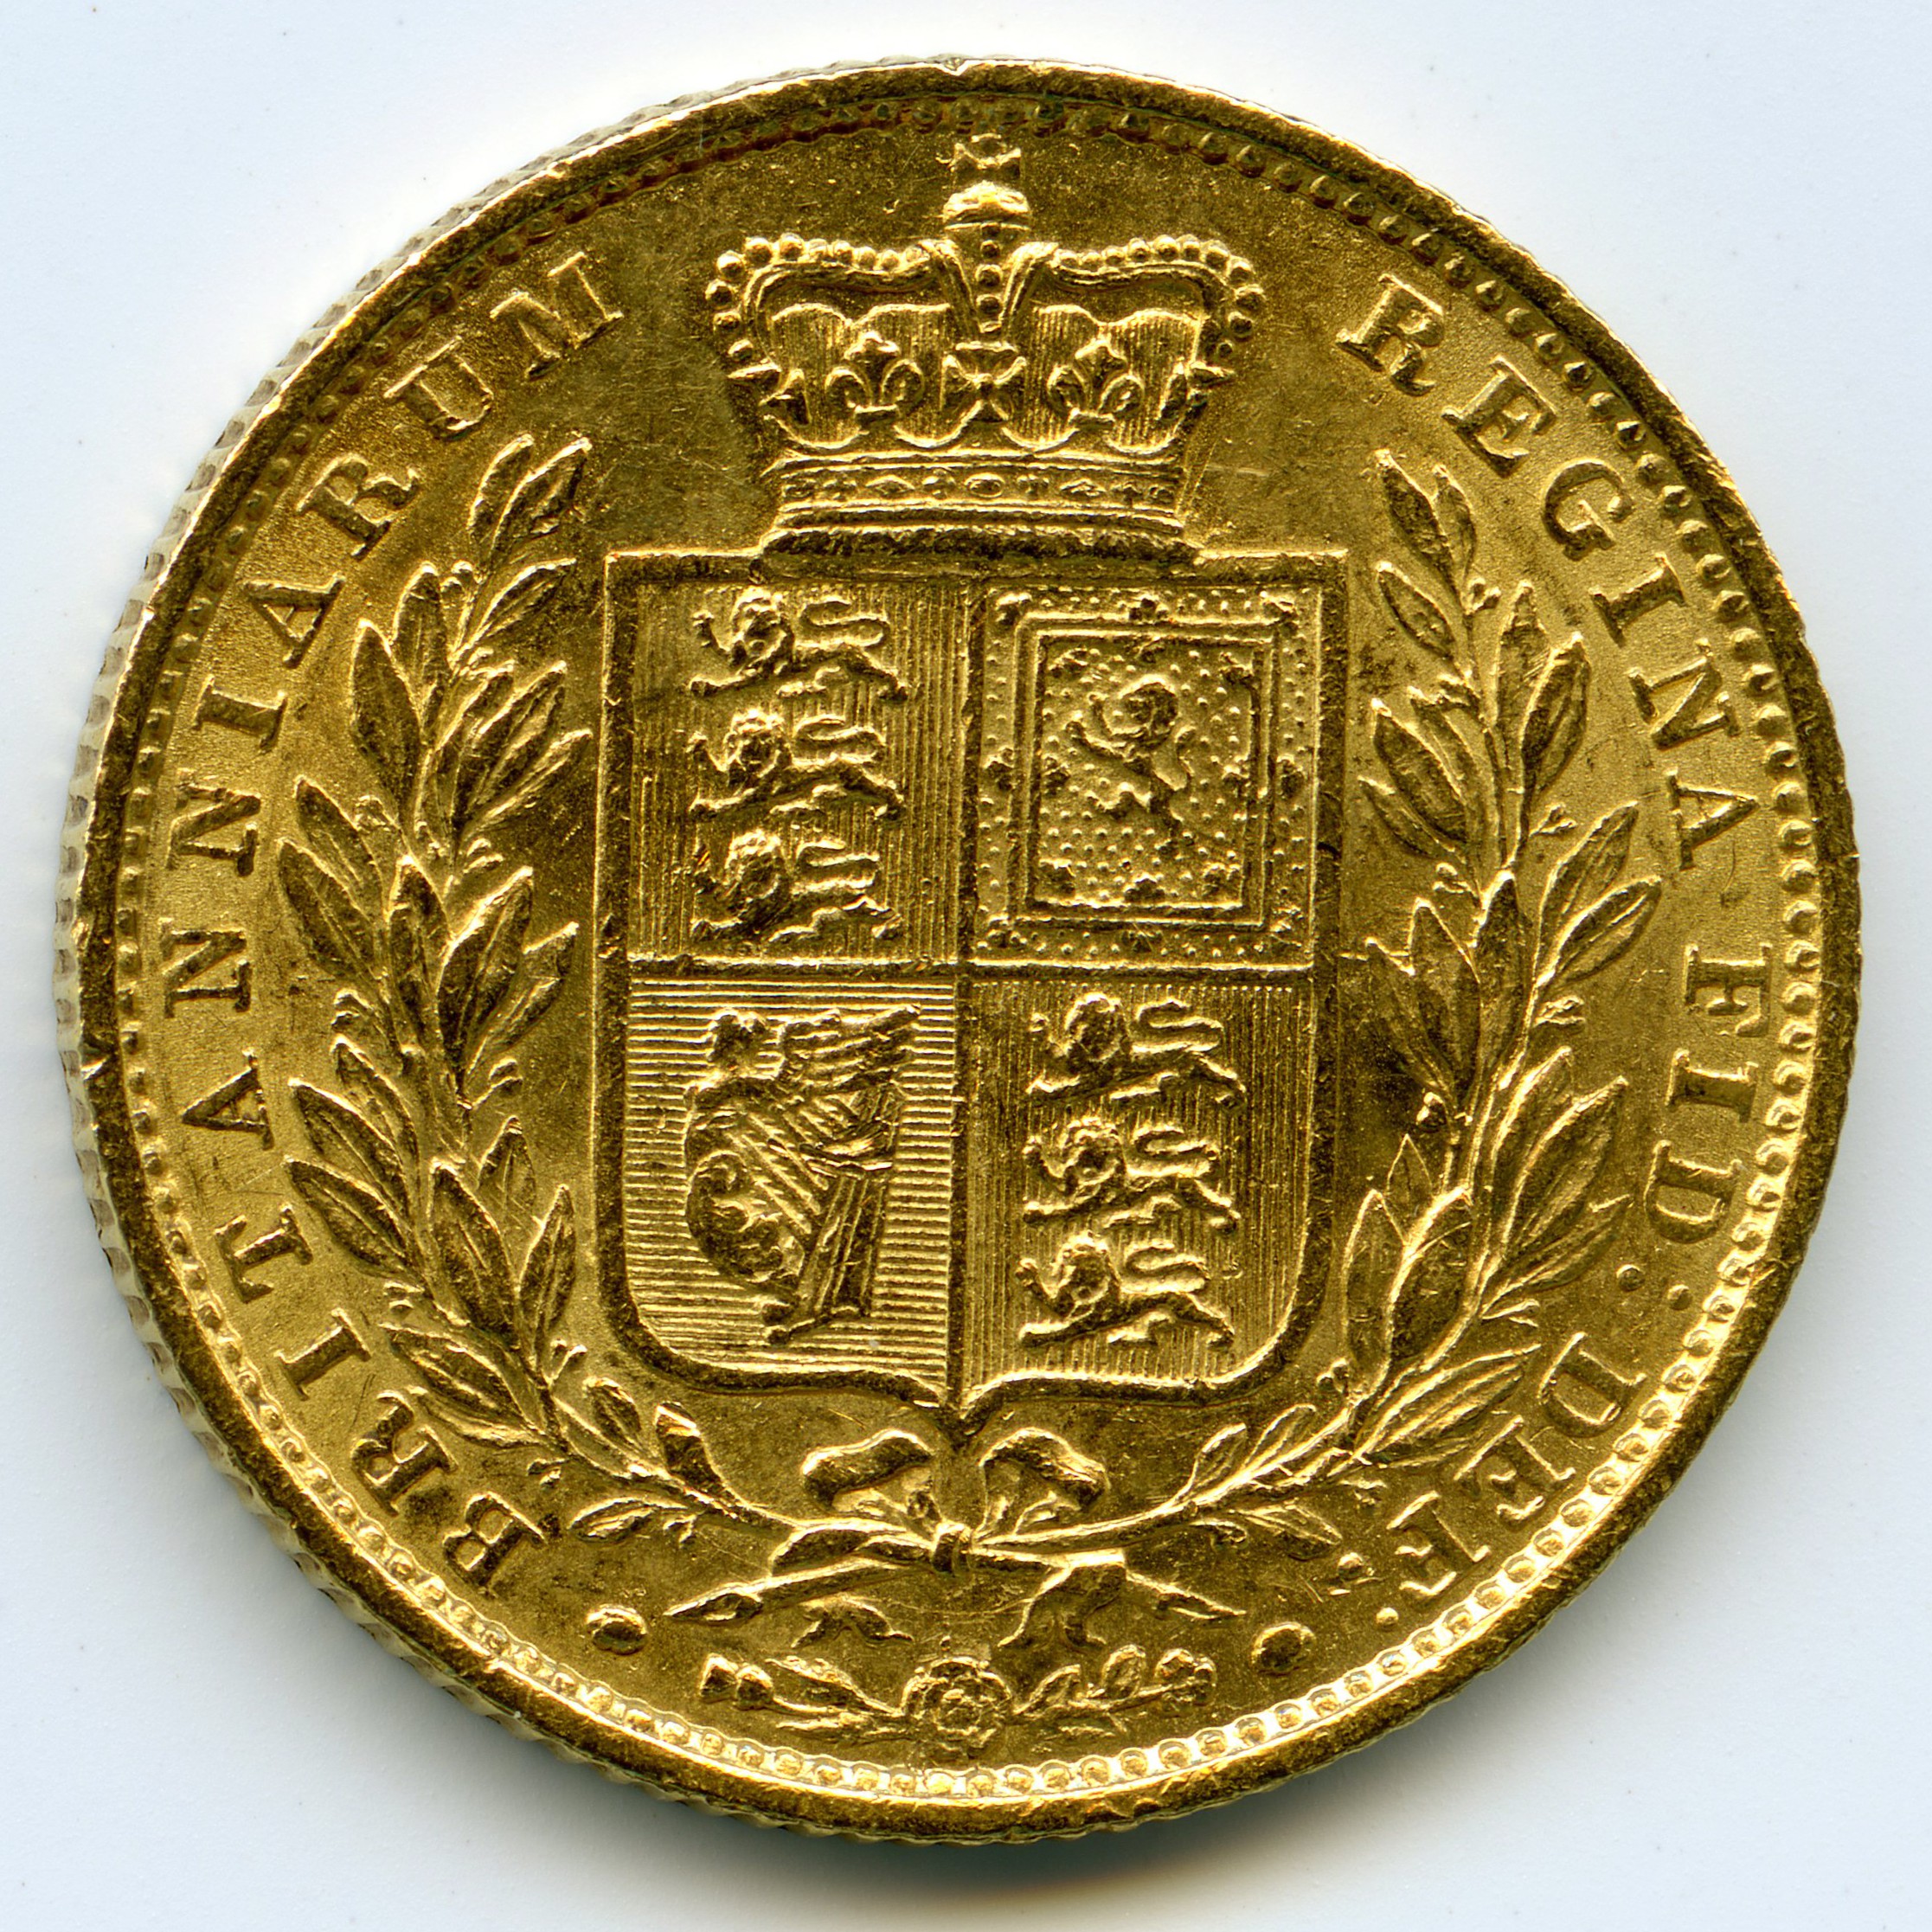 Grande-Bretagne - Souverain - 1852 revers